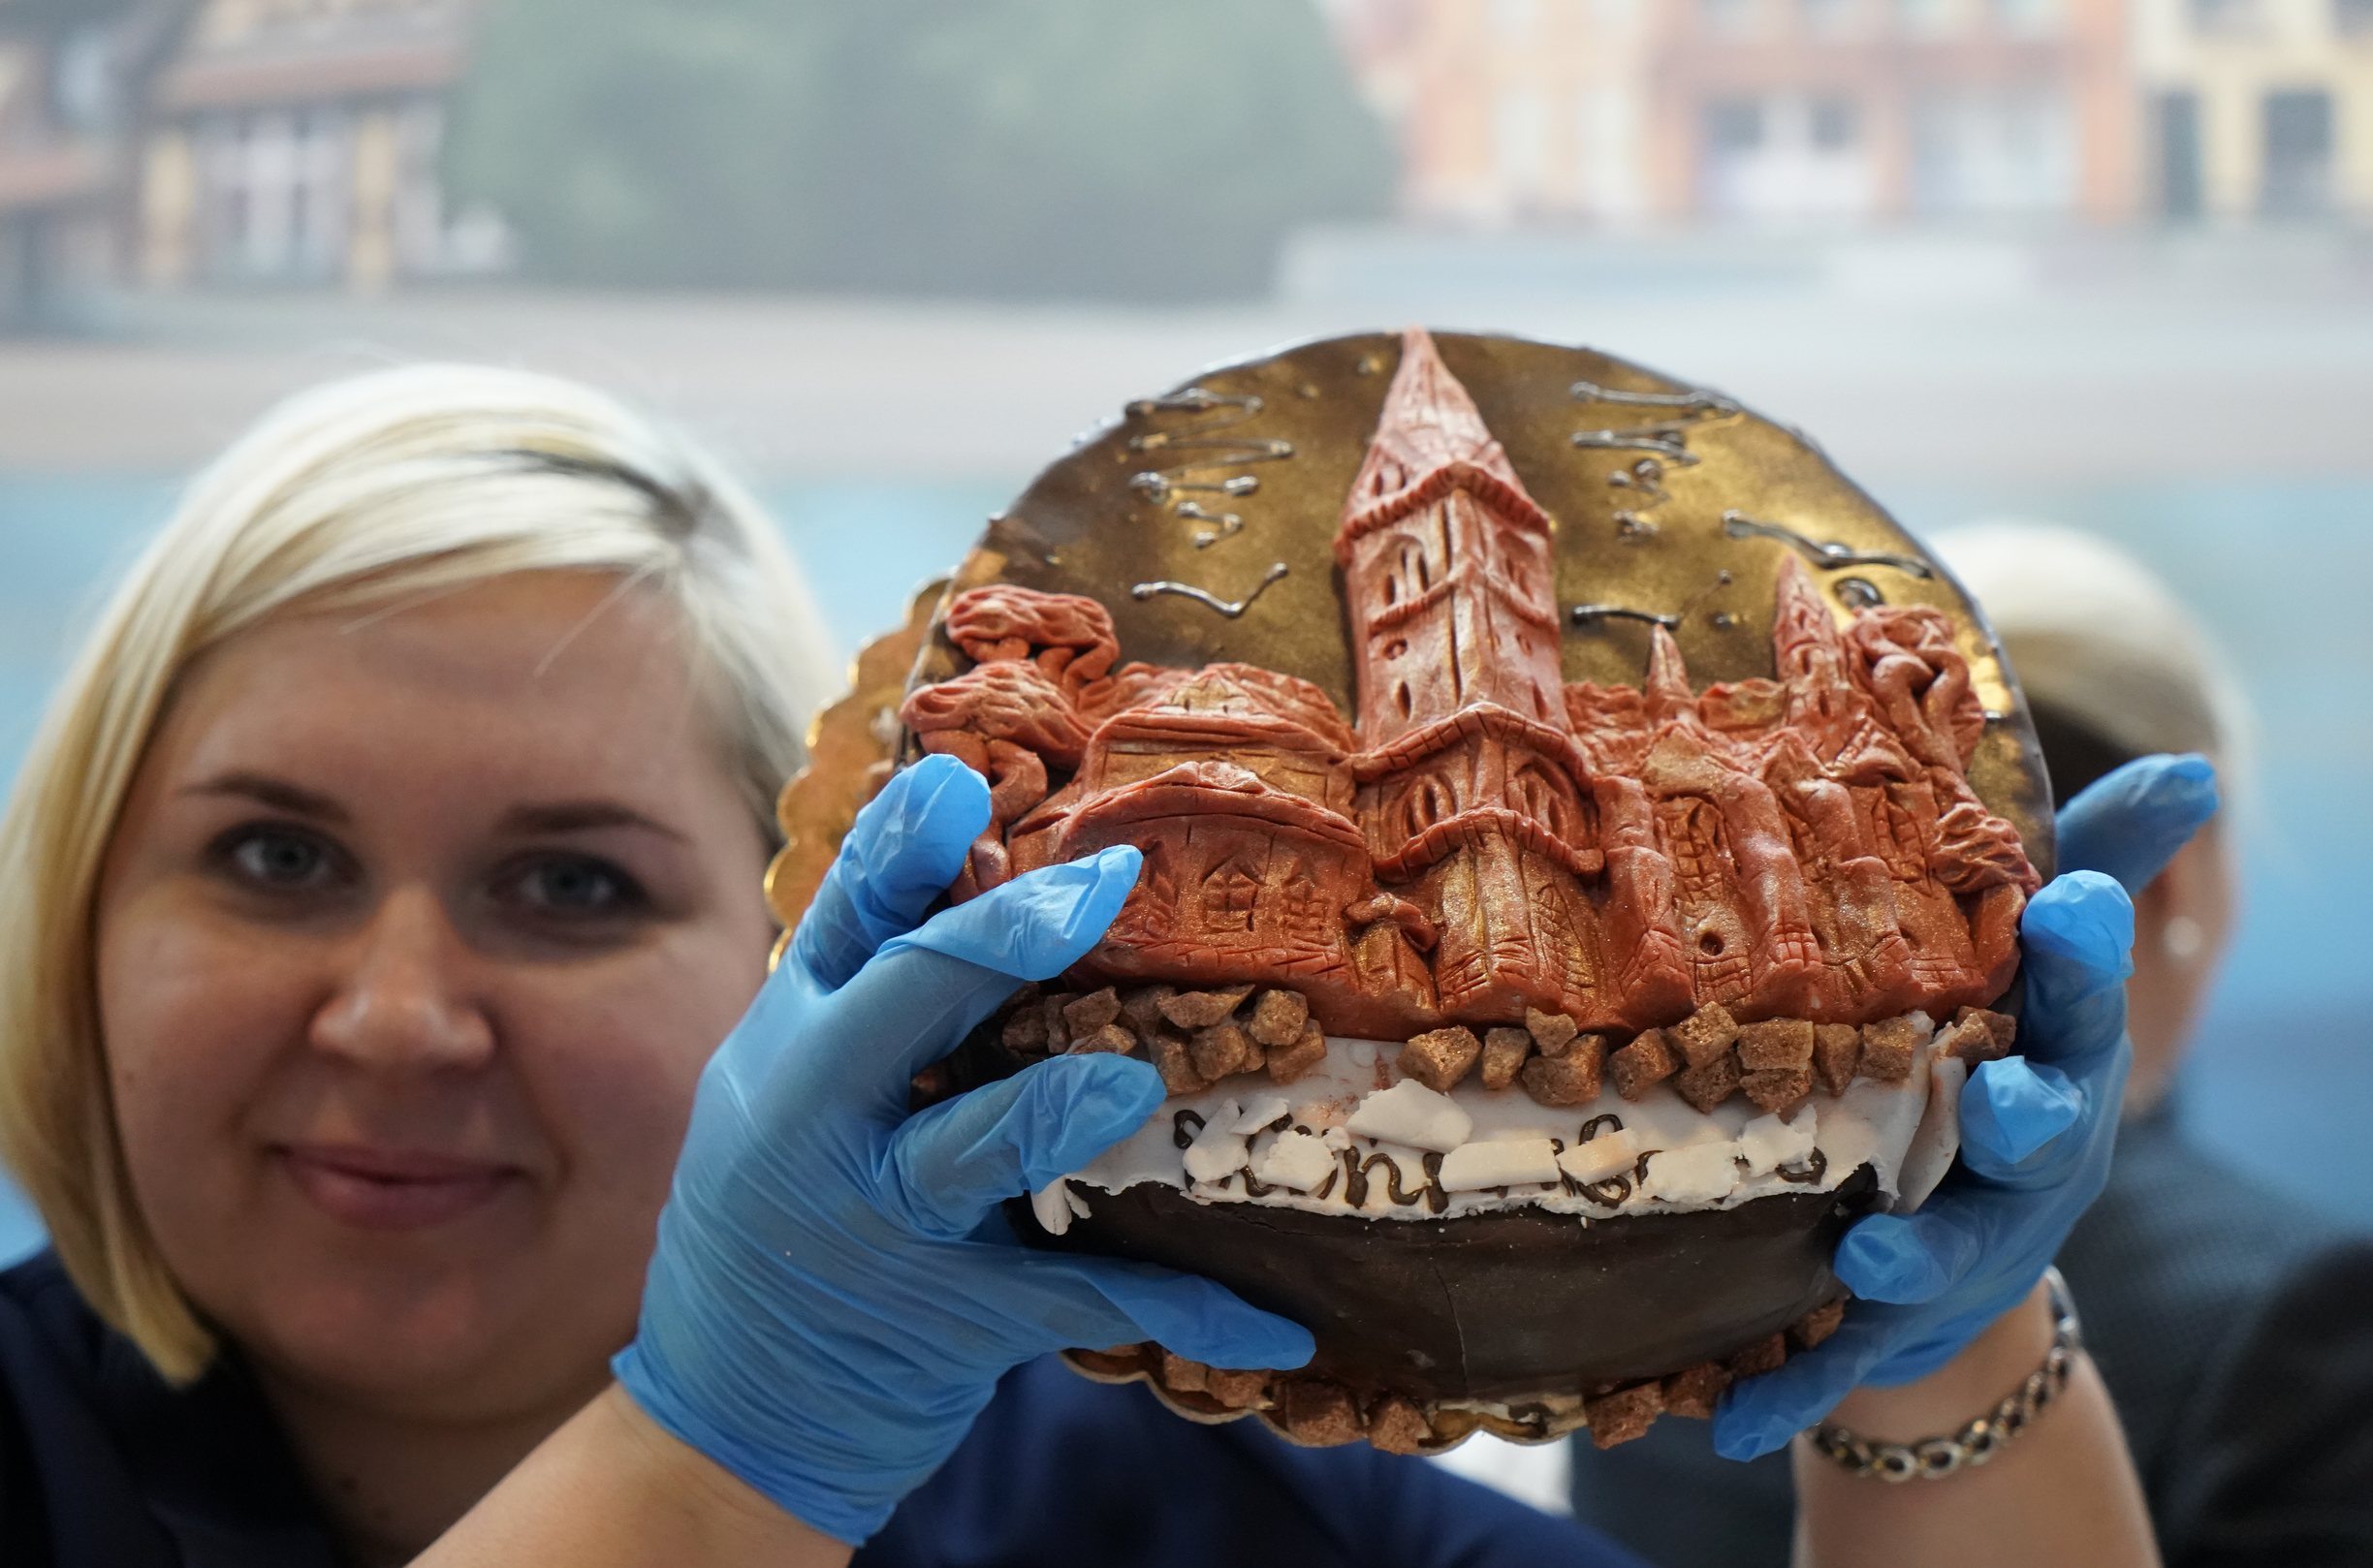 На немецкой выставке с Алихановым «замаскировали» слово «Königsberg» на торте